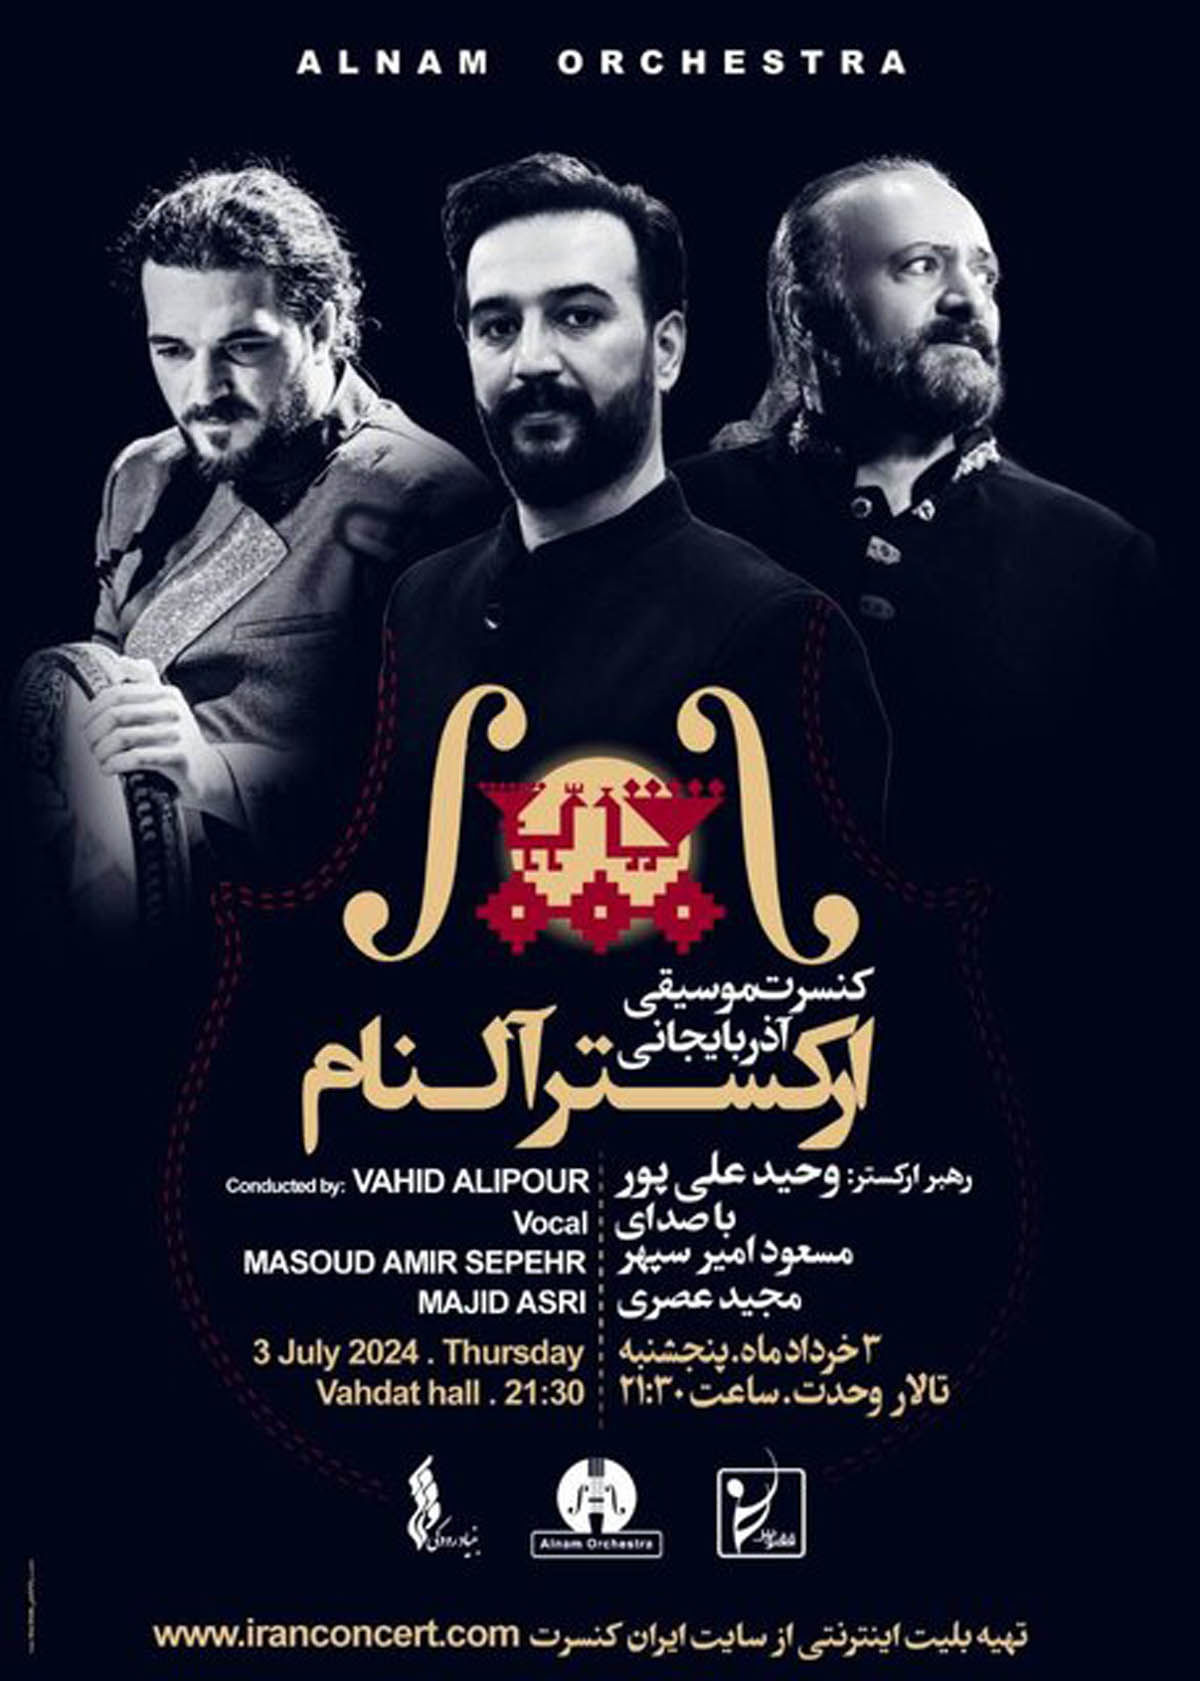 کنسرت آذربایجانی در تالار وحدت